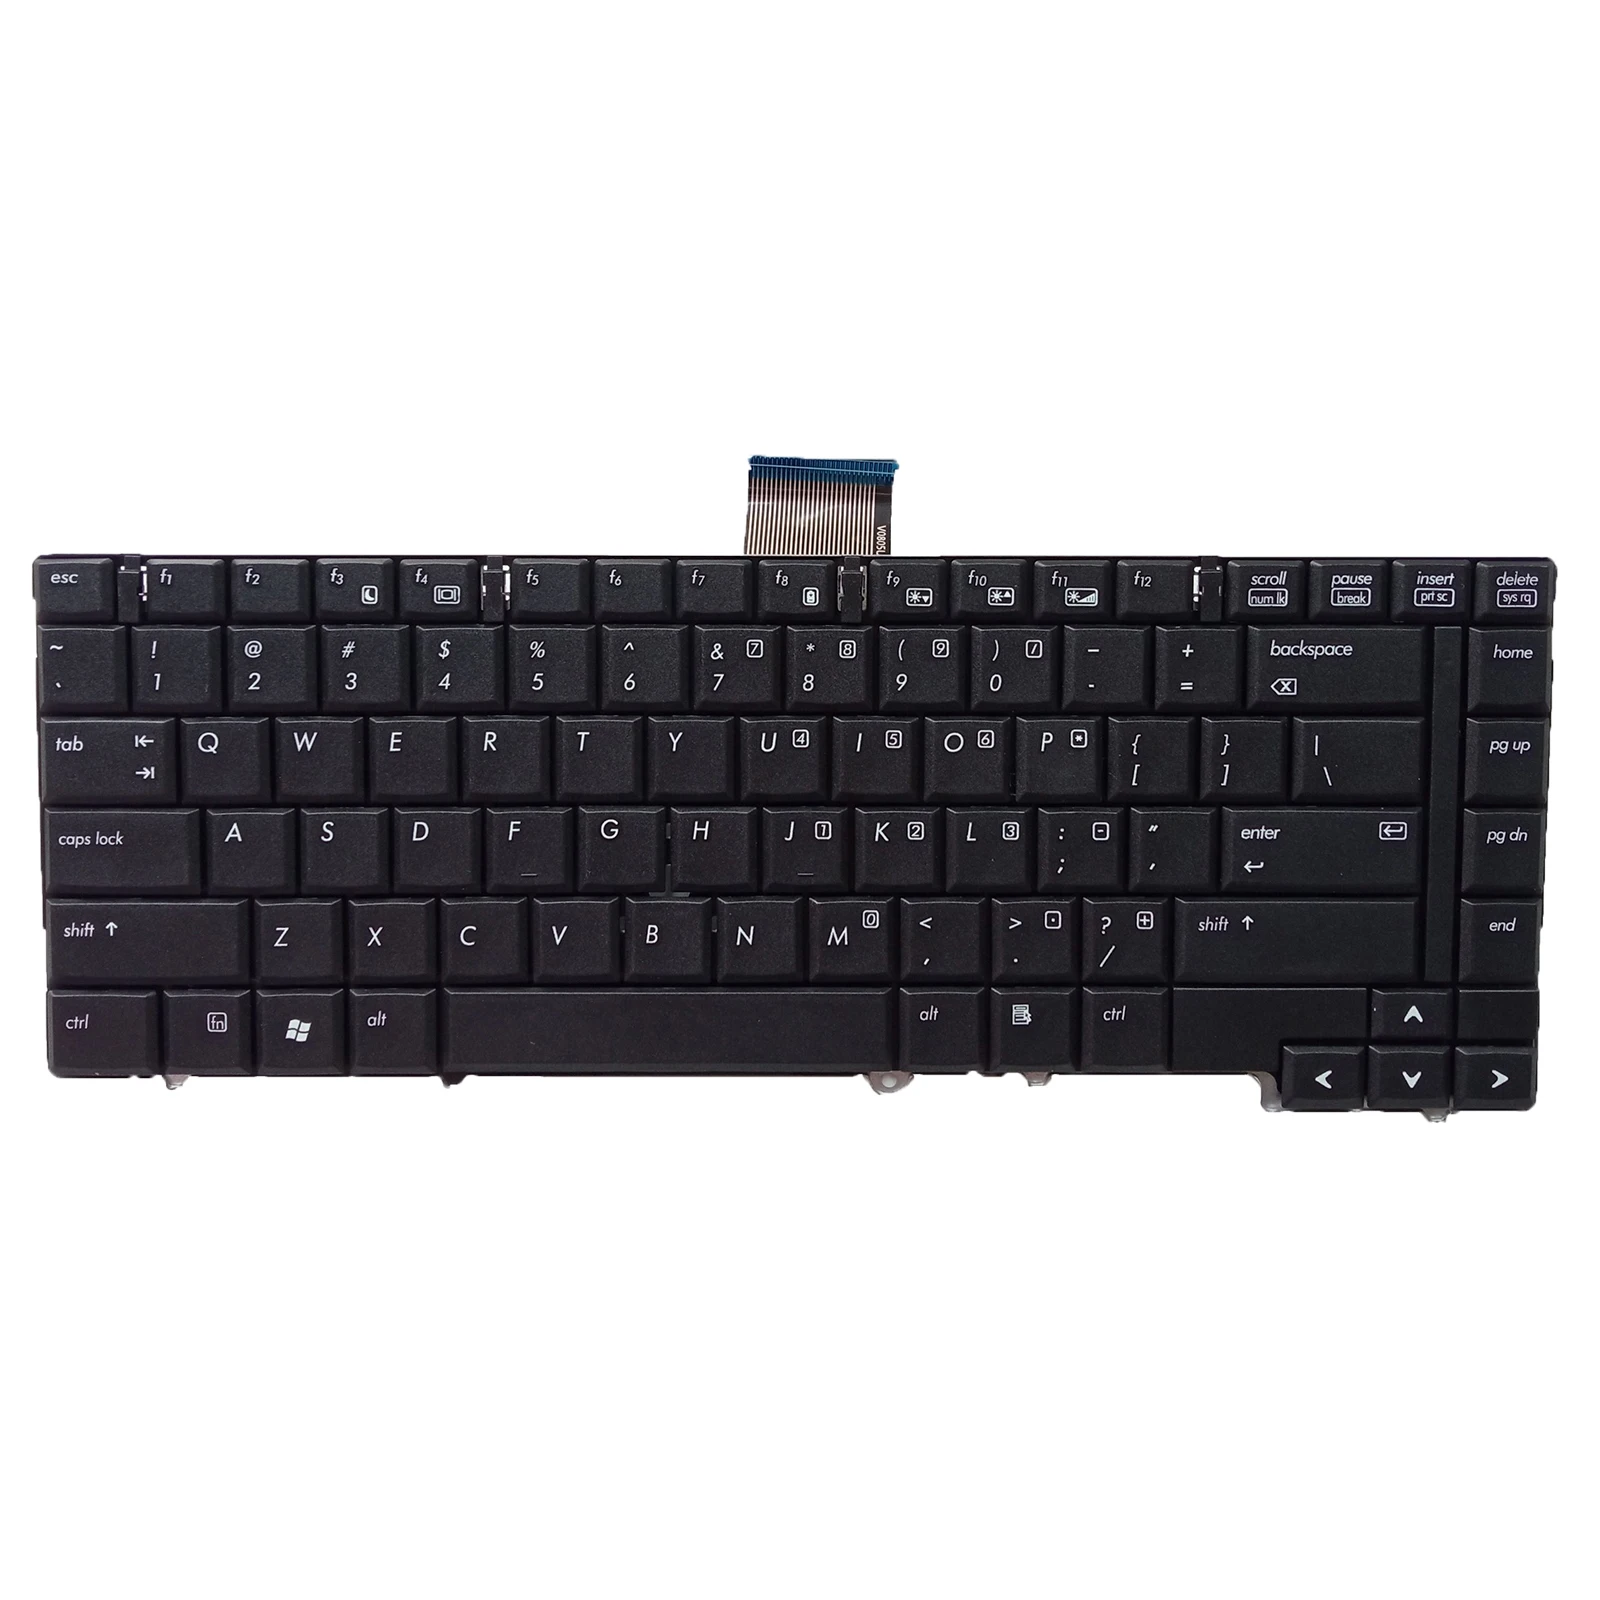 Новая клавиатура для ноутбука HP EliteBook 6930 6930P 483010-001 468778-001 V070530AS1, без указателя, черная версия для США